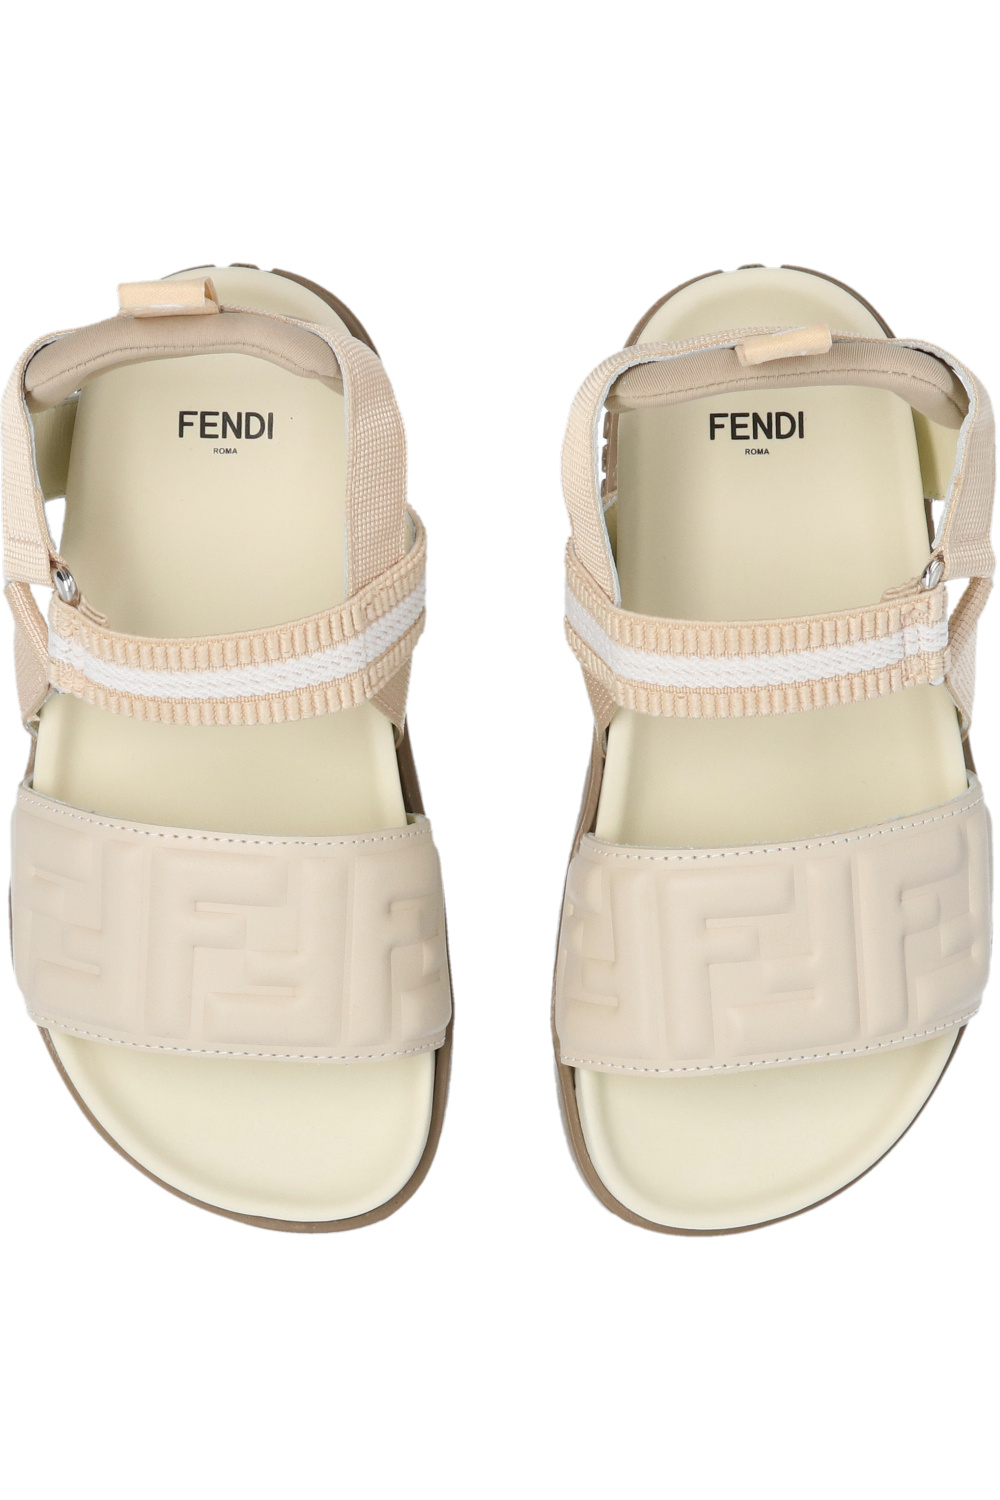 Fendi Kids fendi yellow logo sandal